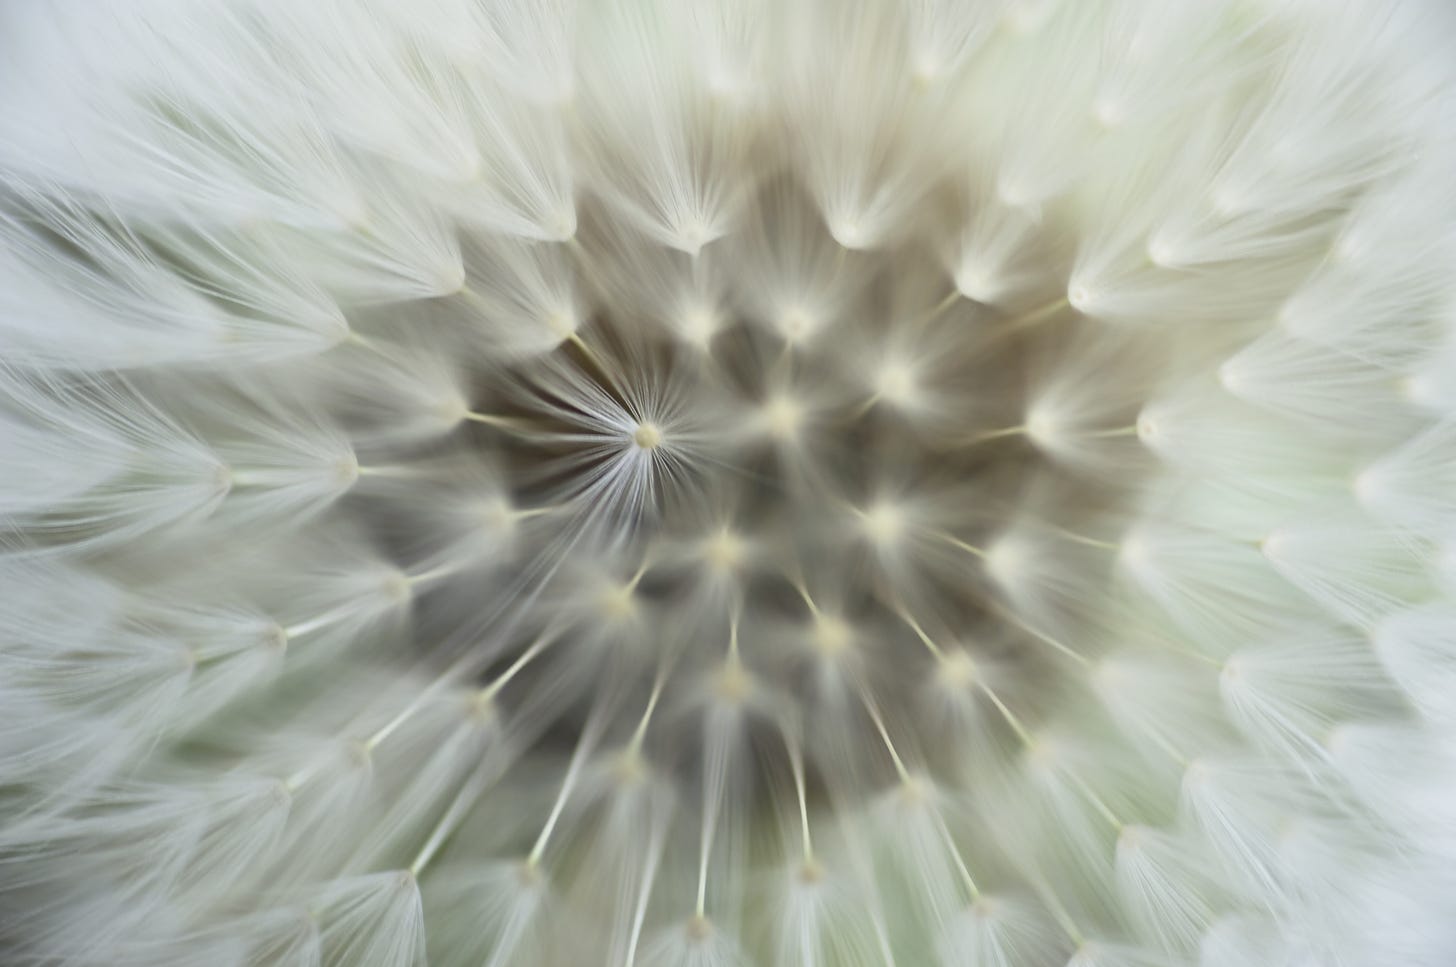 Innards of a cotton flower closeup